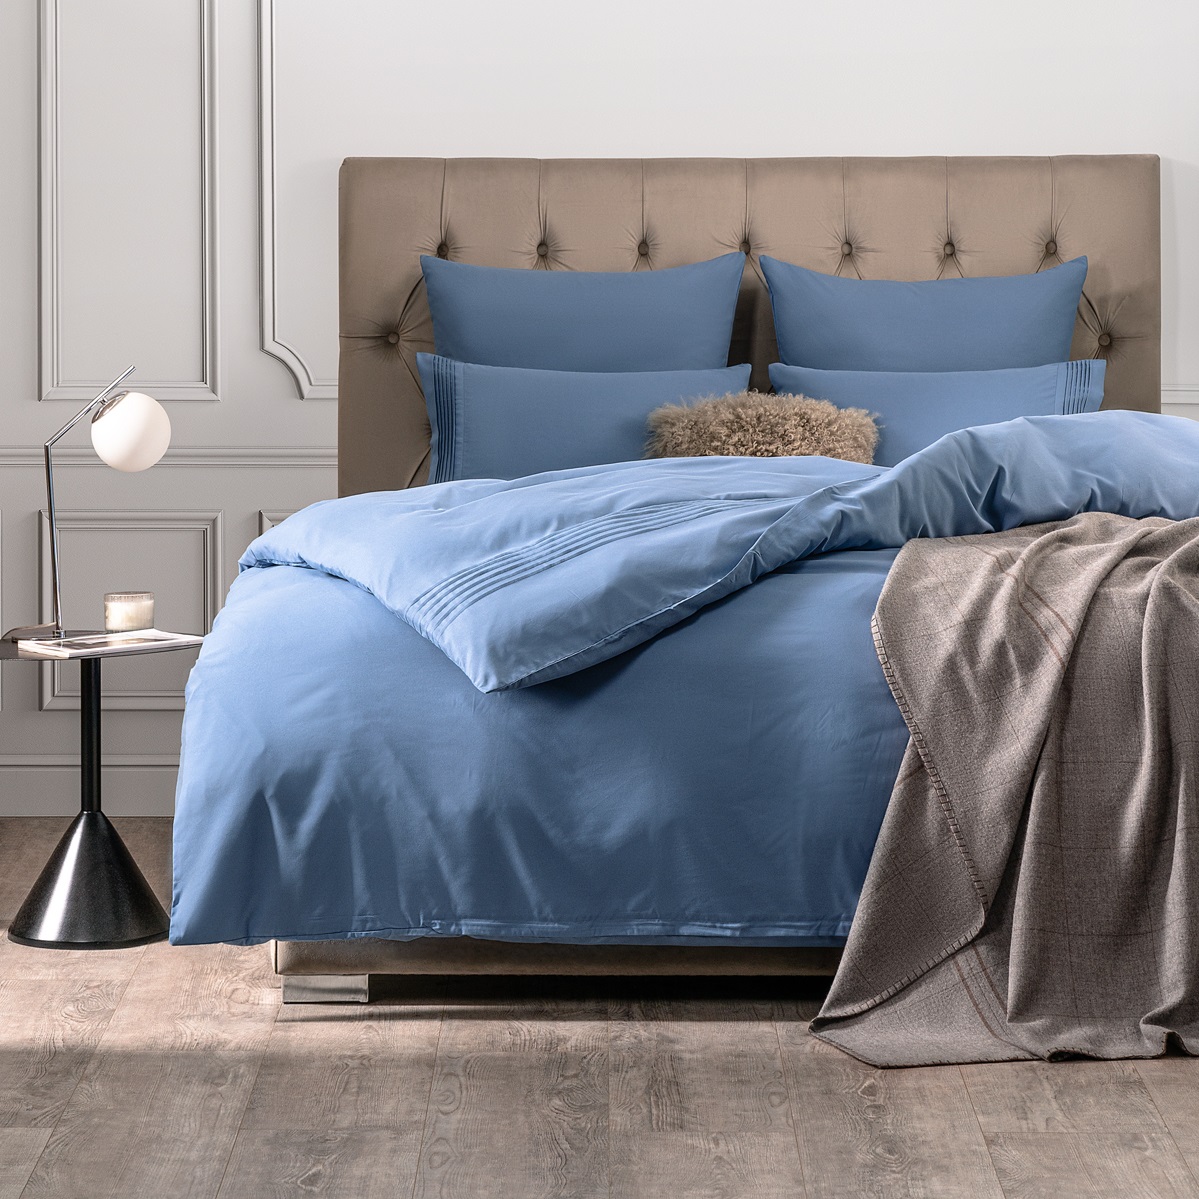 Комплект постельного белья Sleepix Миоко синий Евро комплект постельного белья sleepix миоко синий полуторный